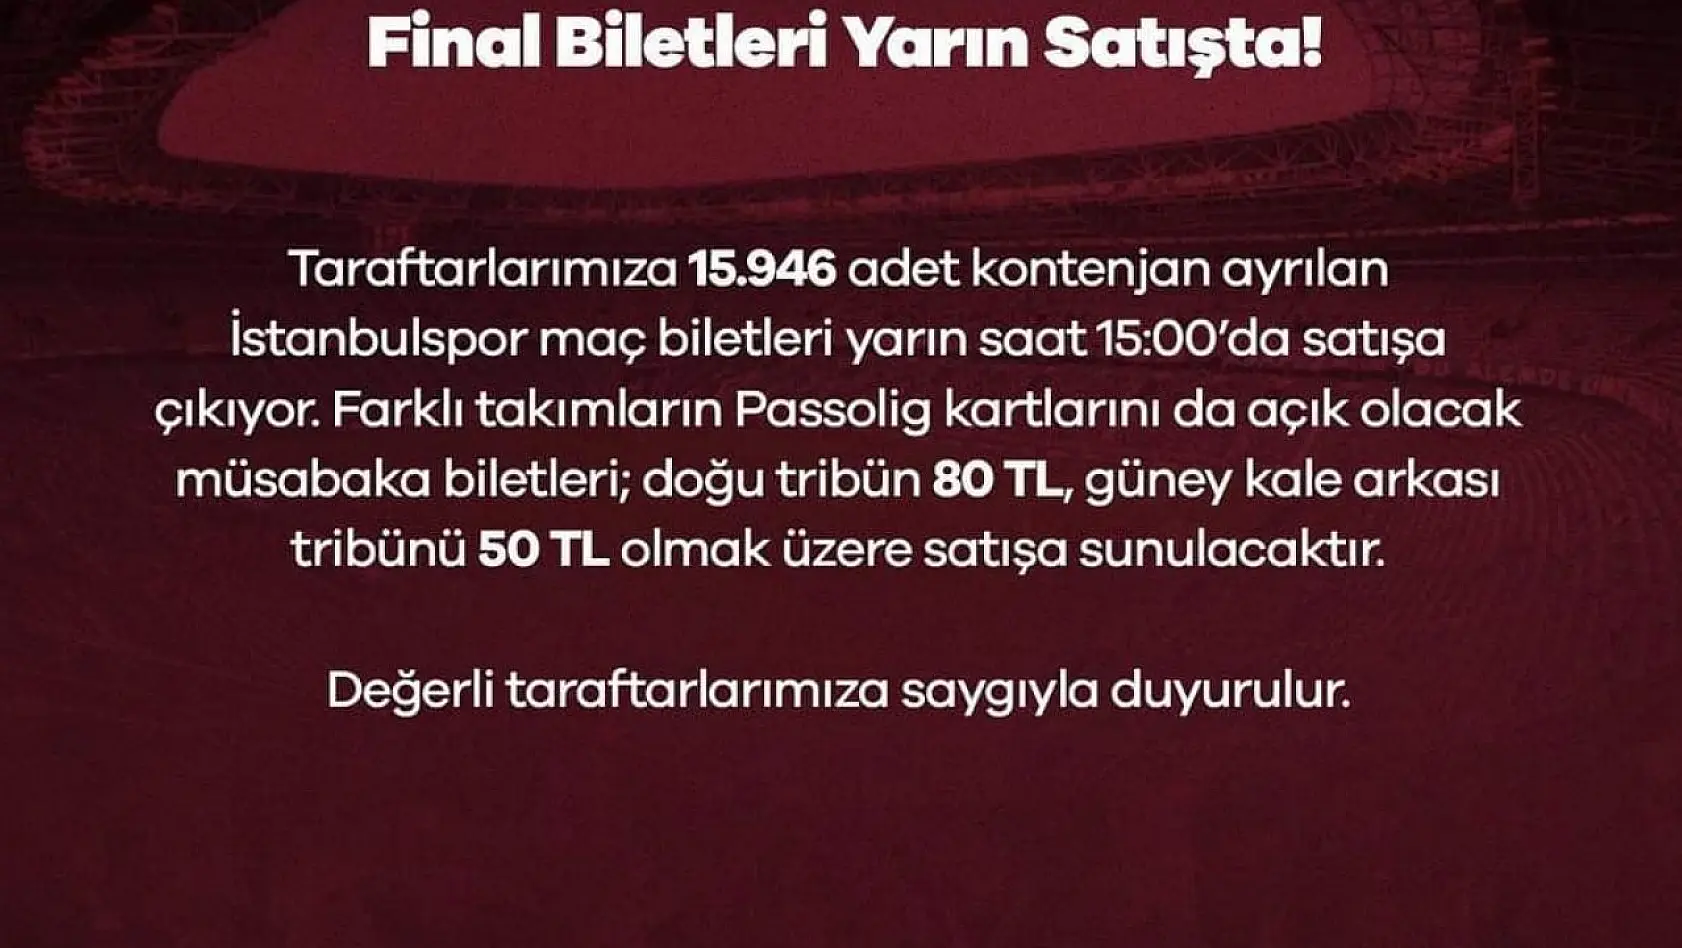 Bandırmaspor - İstanbulspor biletleri satışa sunuluyor